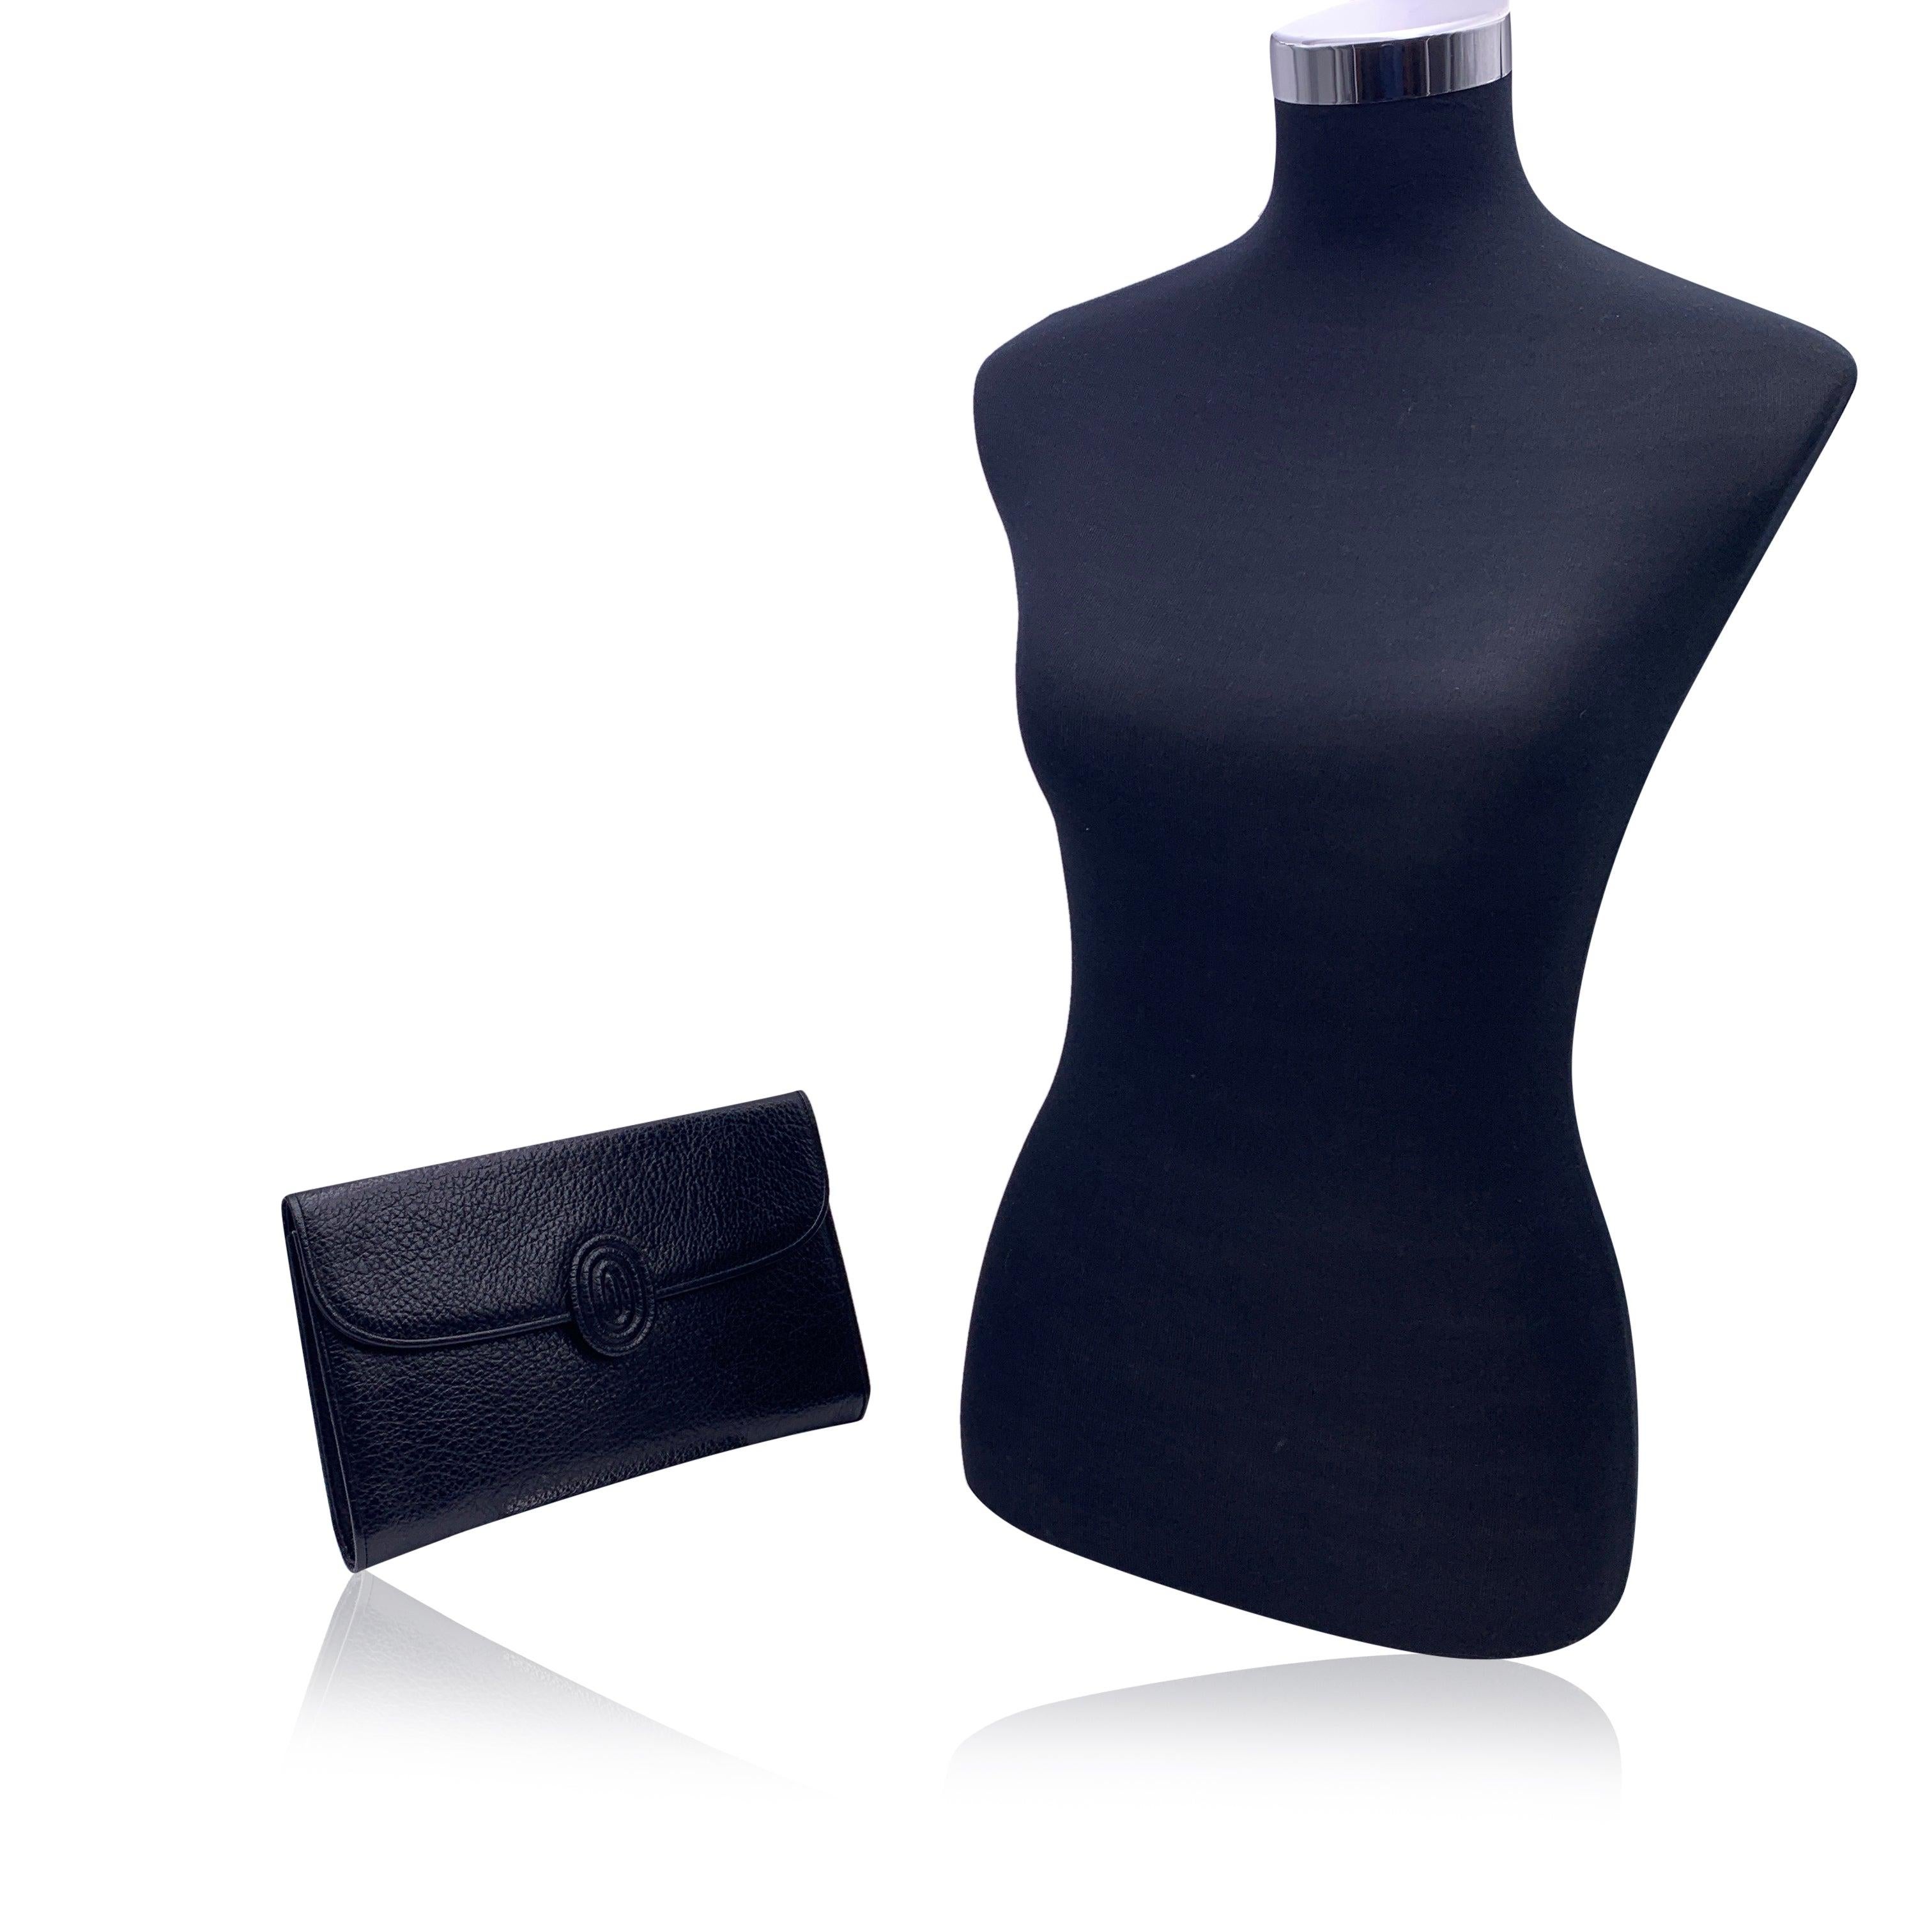 Yves Saint Laurent Vintage-Clutch-Tasche aus schwarzem, gekörntem Leder. Sie hat eine Klappe mit Magnetknopfverschluss auf der Vorderseite. 1 offene Tasche hinten. Futter aus Stoff. 1 Seitentasche mit Reißverschluss und 1 offene Seitentasche innen.